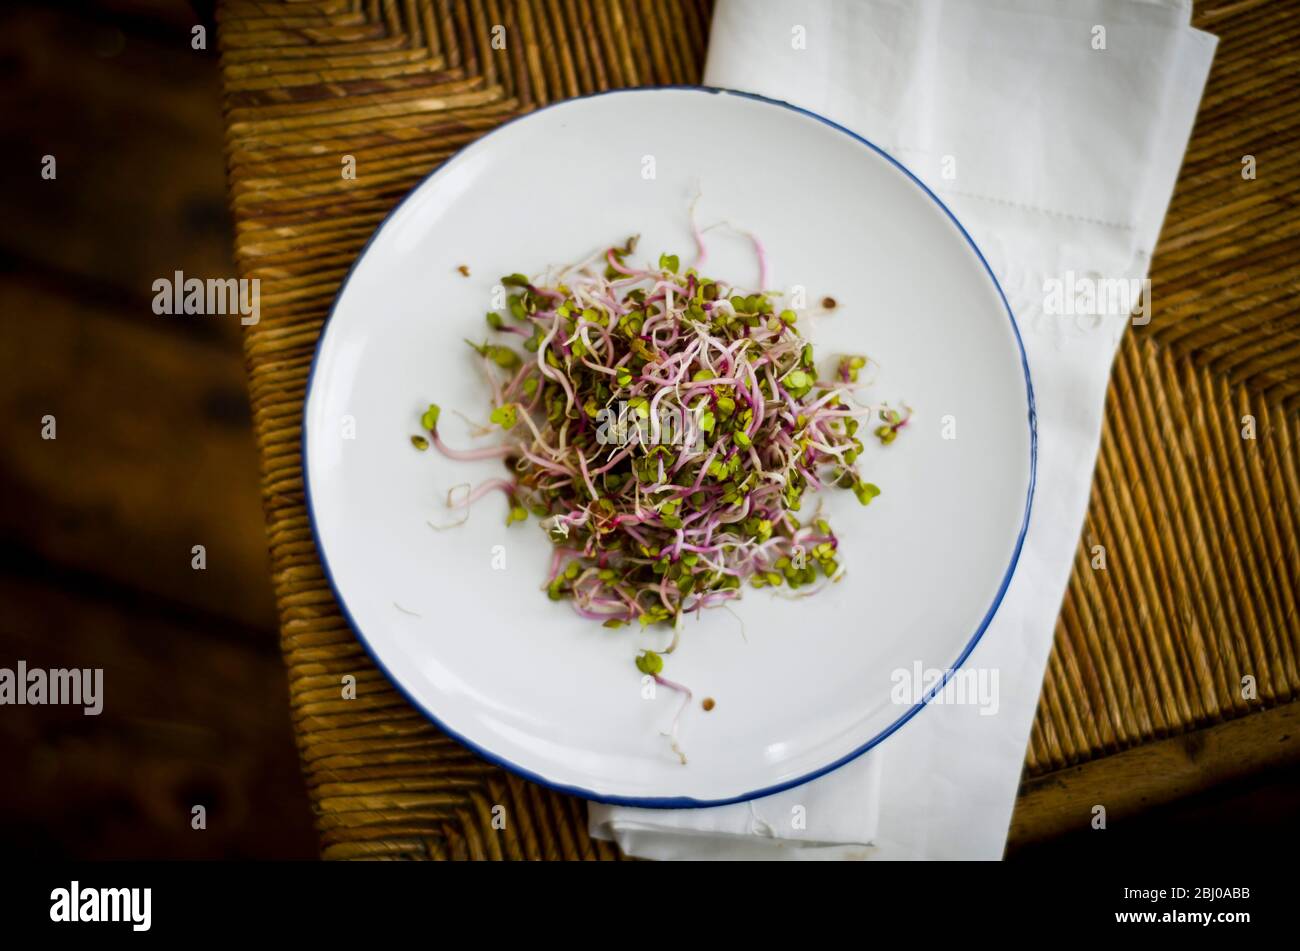 Simple salade de radis Rose de Chine a fait germer, habillé avec de la sauce soja et le vinaigre de riz. Banque D'Images